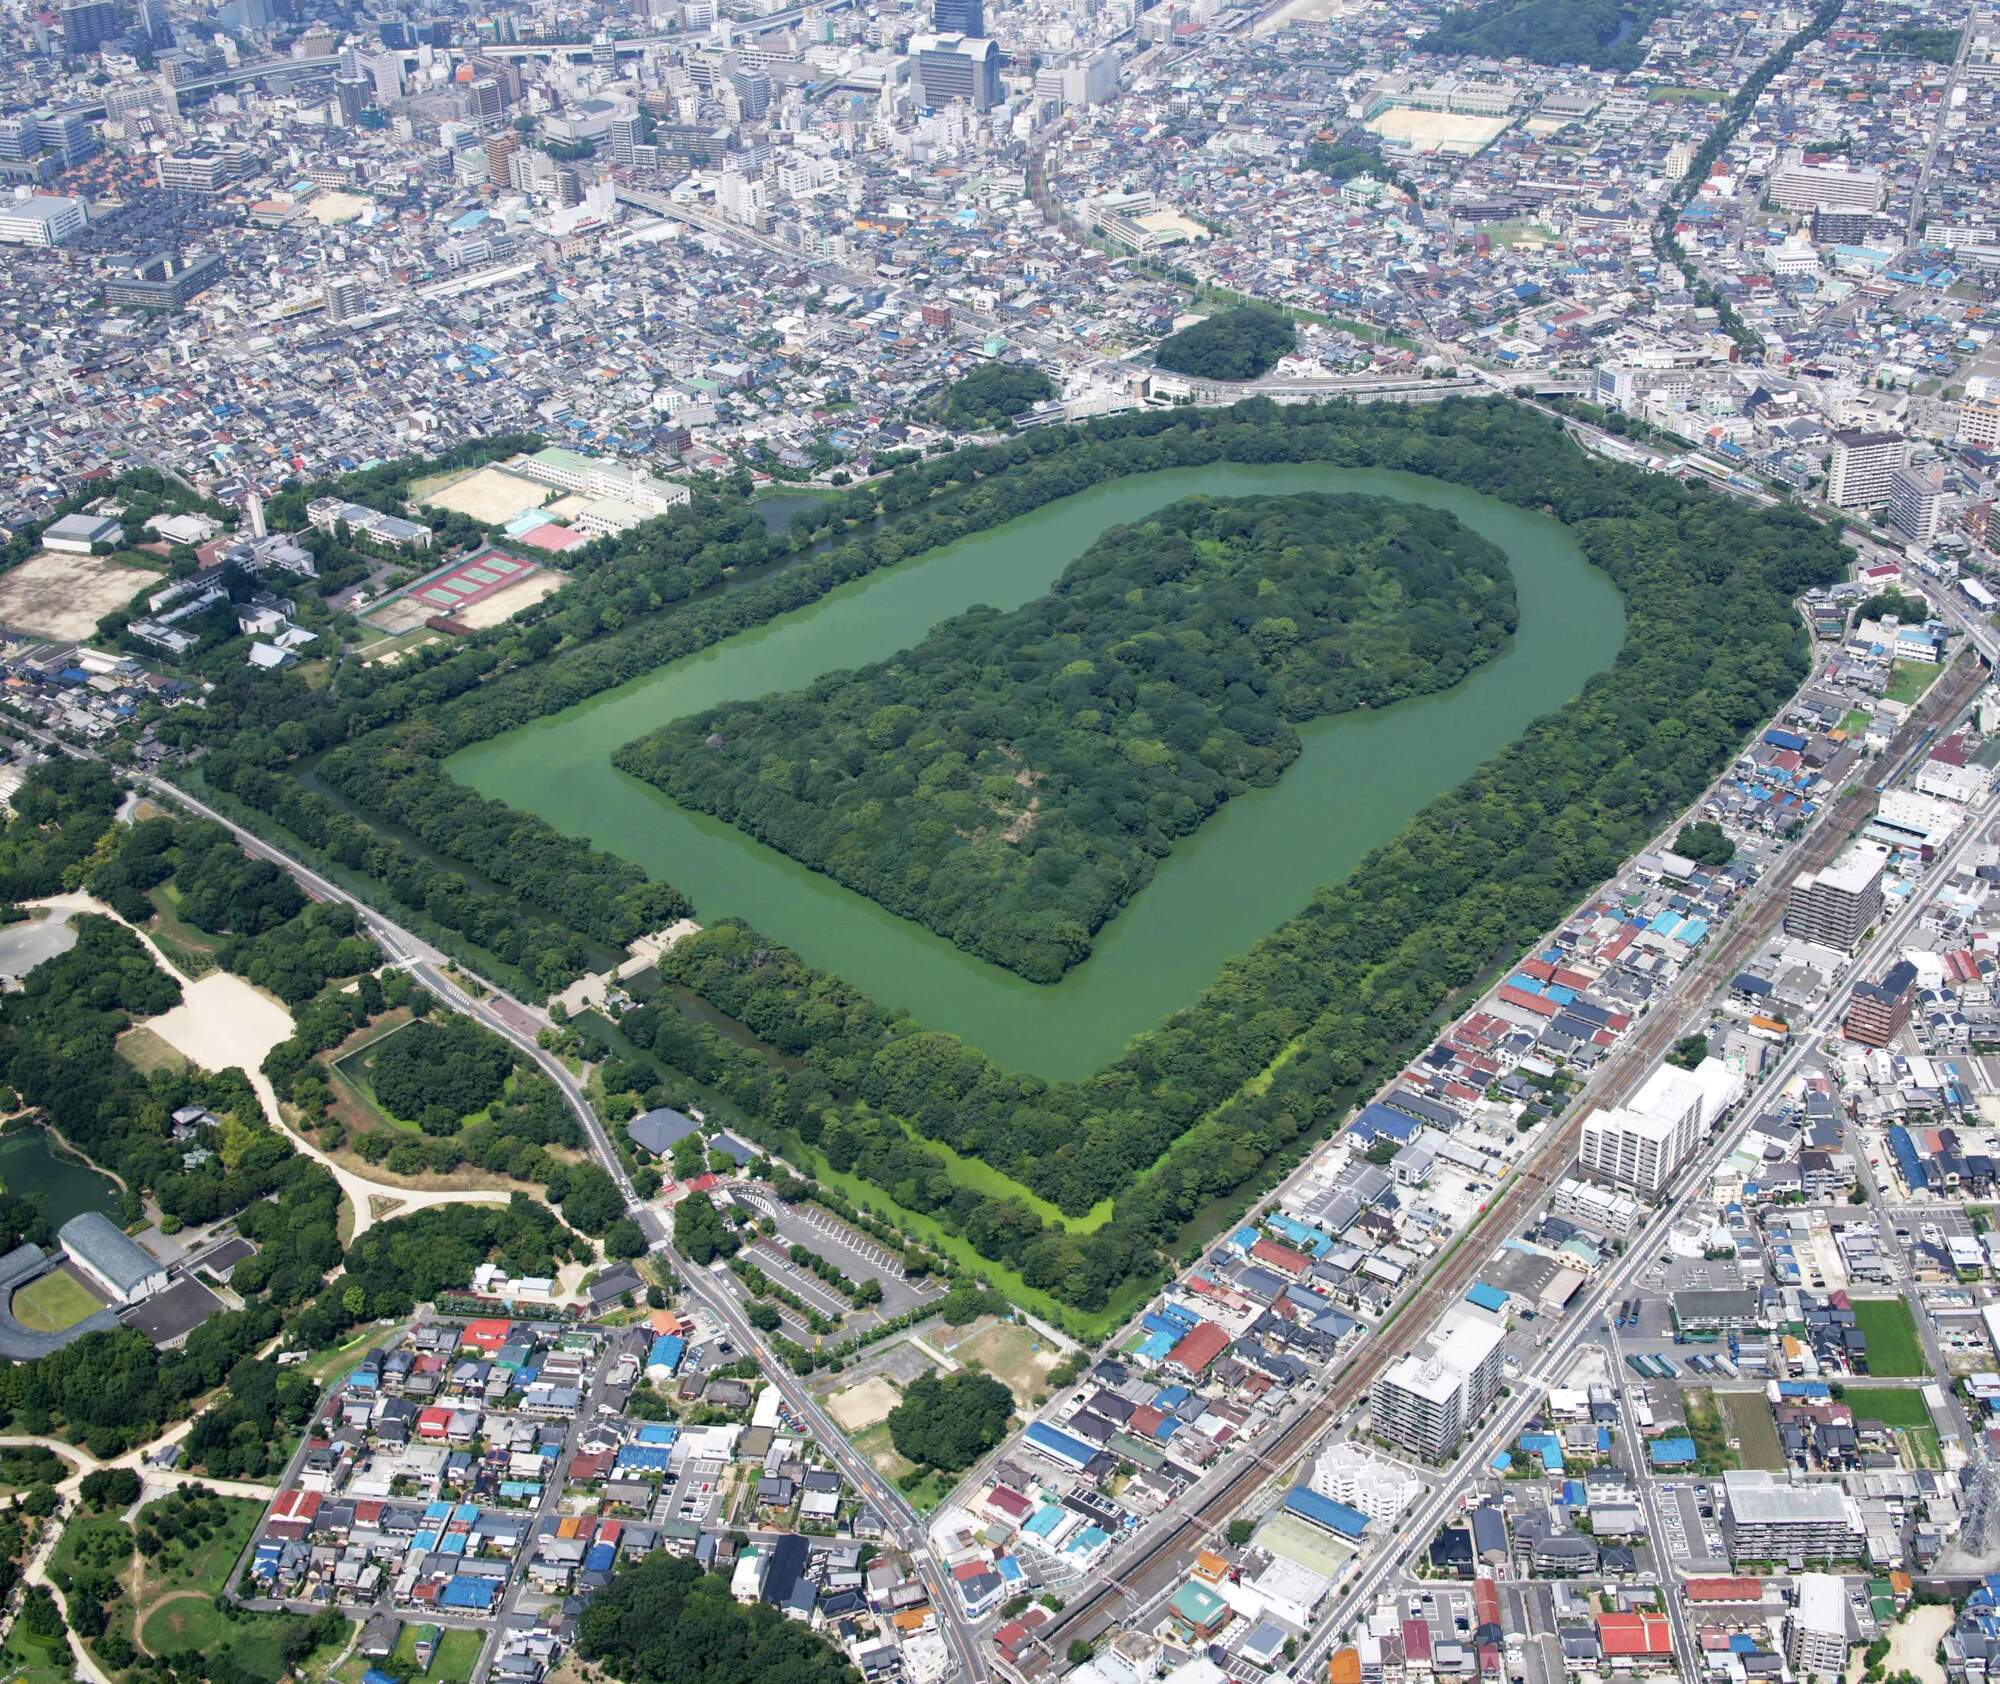 У Японії археологи знайшли стародавні гробниці у формі замкової щілини. Фото з супутника